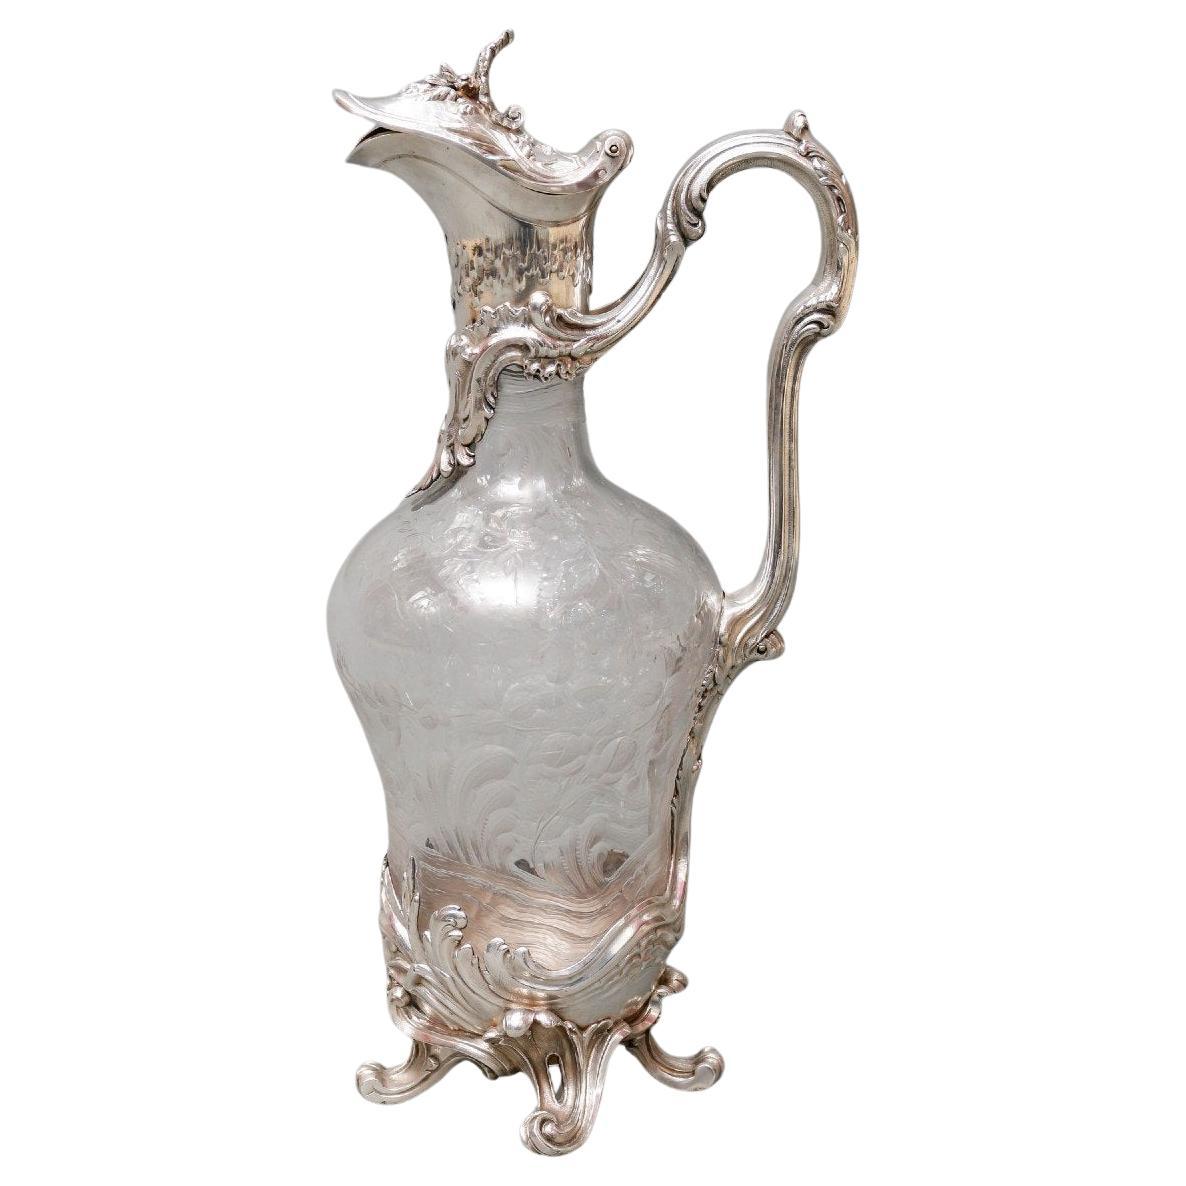 Boin Taburet - Aiguière en cristal gravé et argent massif 19ème siècle